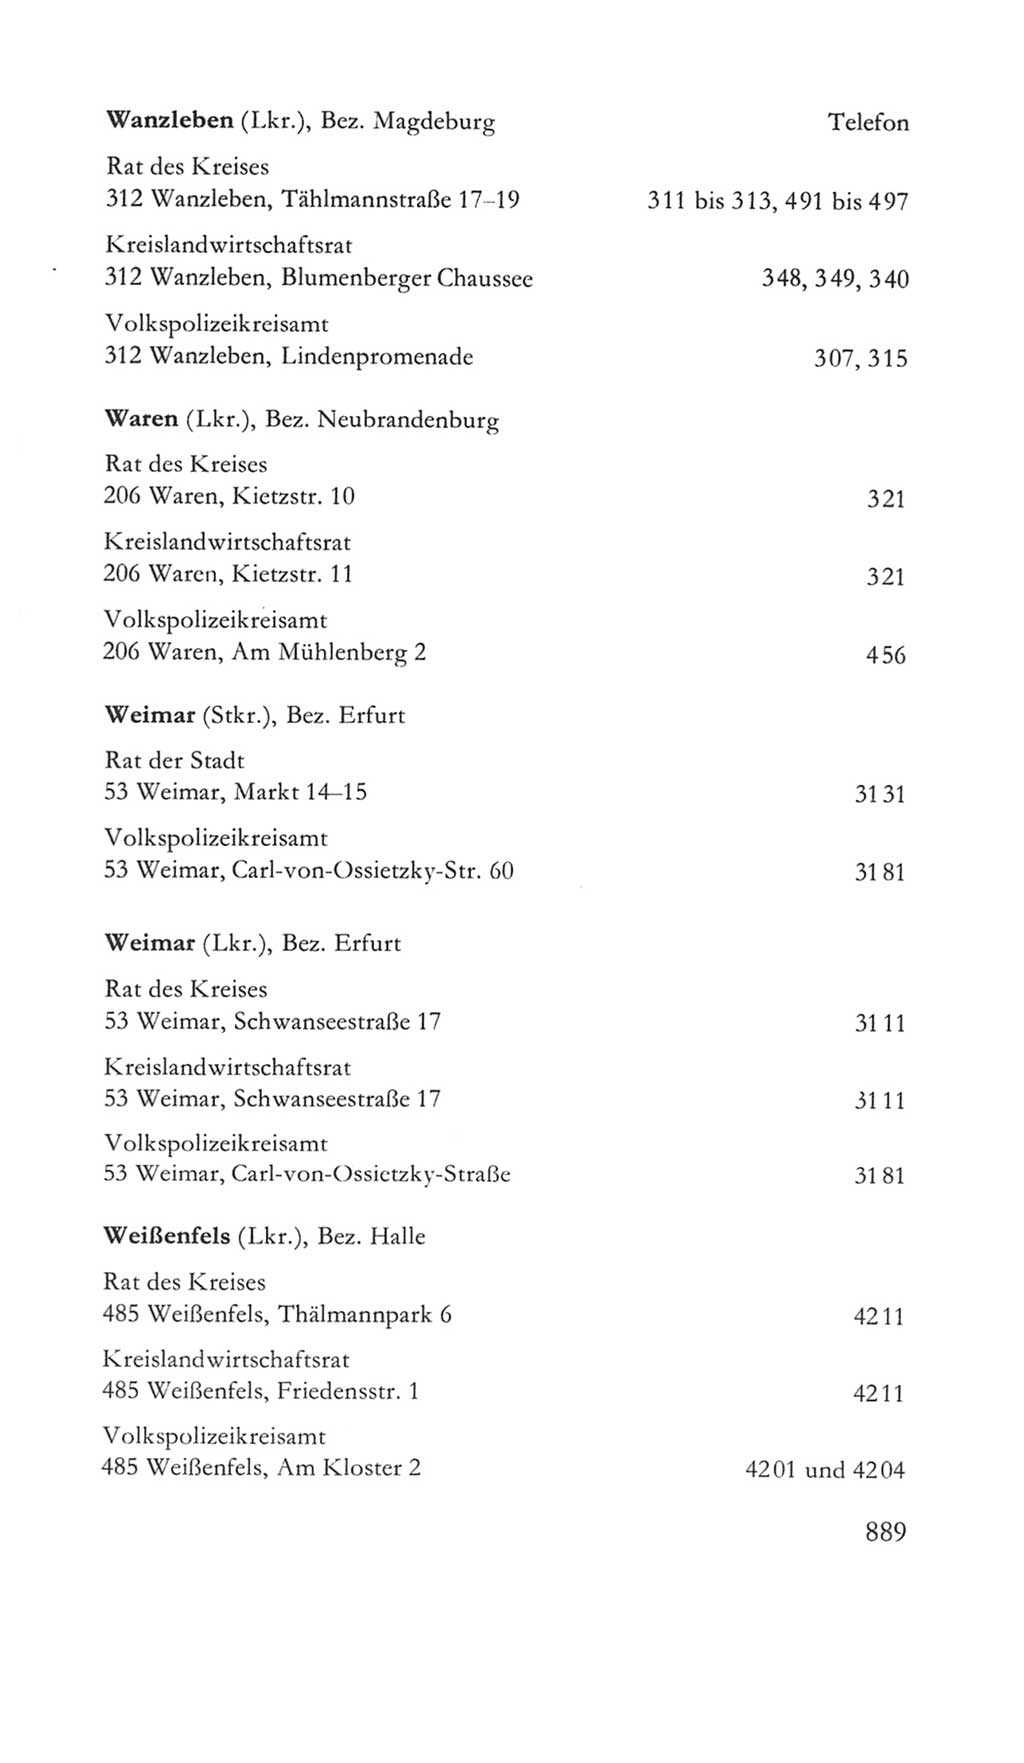 Volkskammer (VK) der Deutschen Demokratischen Republik (DDR) 5. Wahlperiode 1967-1971, Seite 889 (VK. DDR 5. WP. 1967-1971, S. 889)